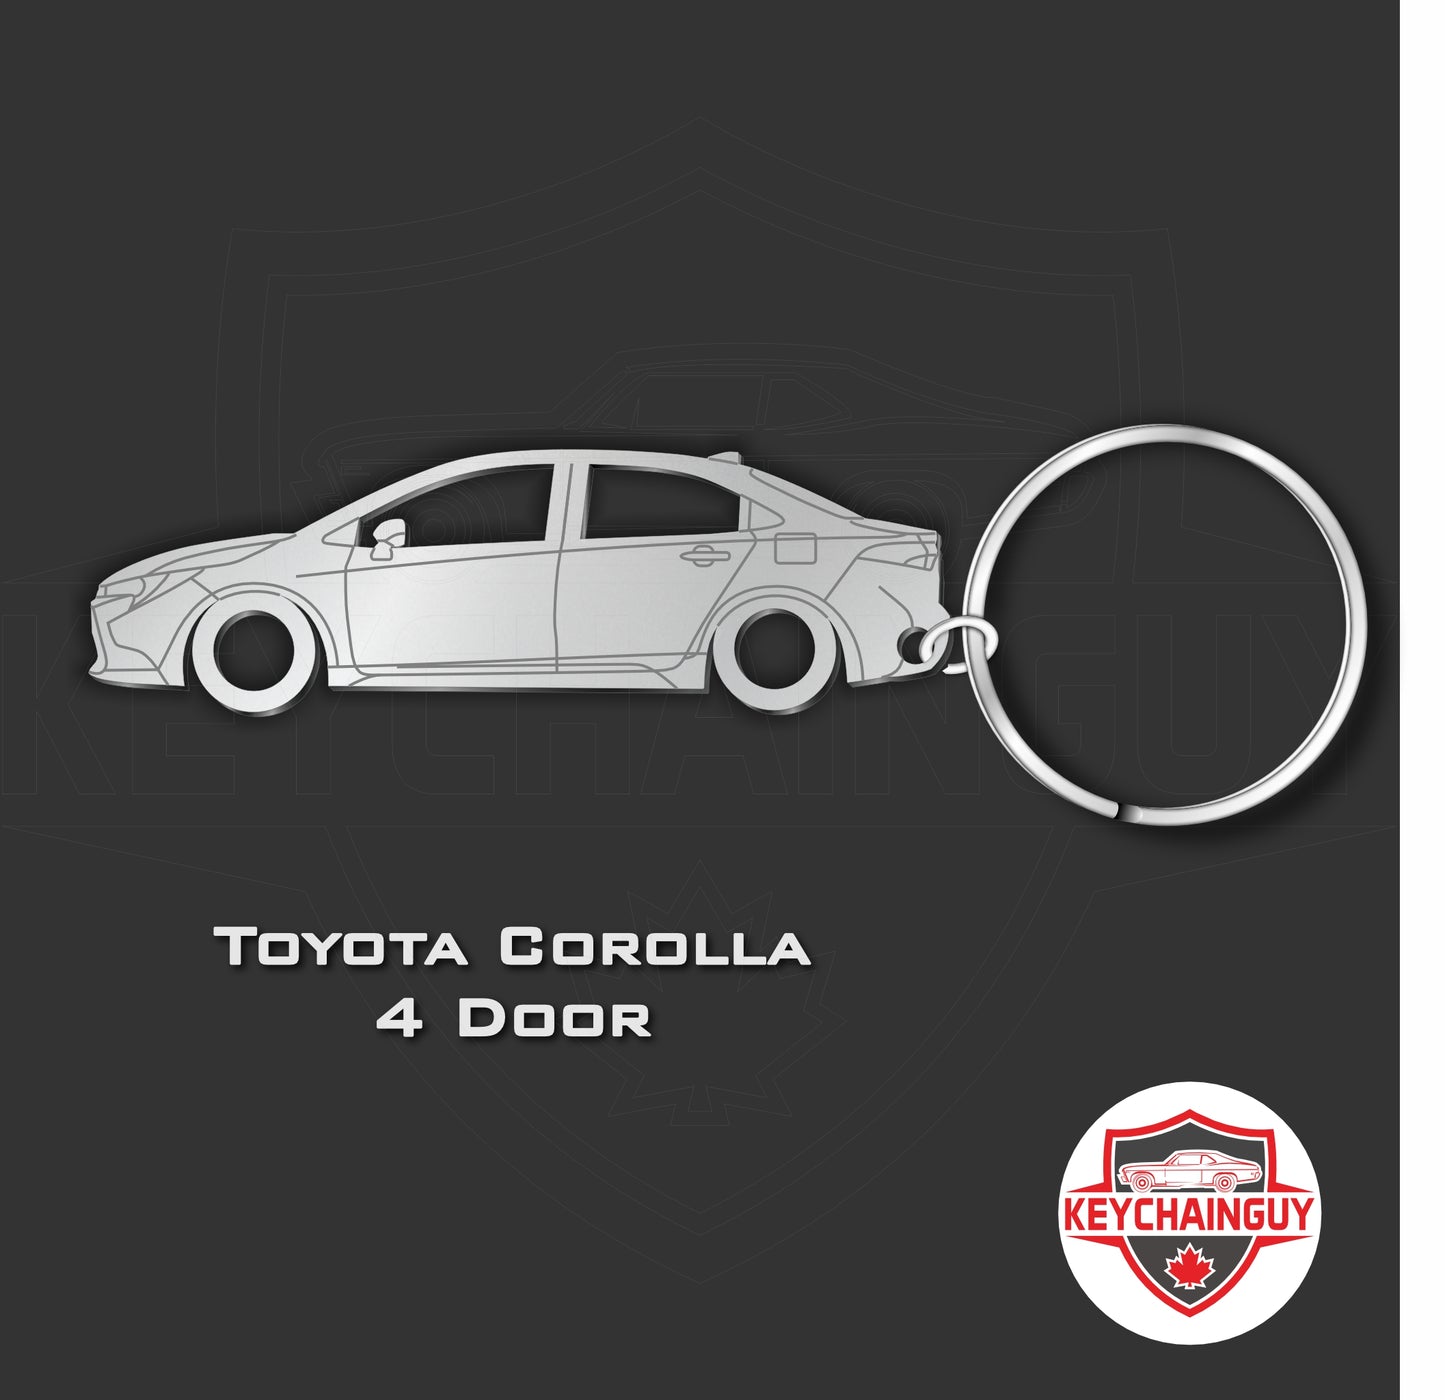 2018 - Current Toyota Corolla 4 Door